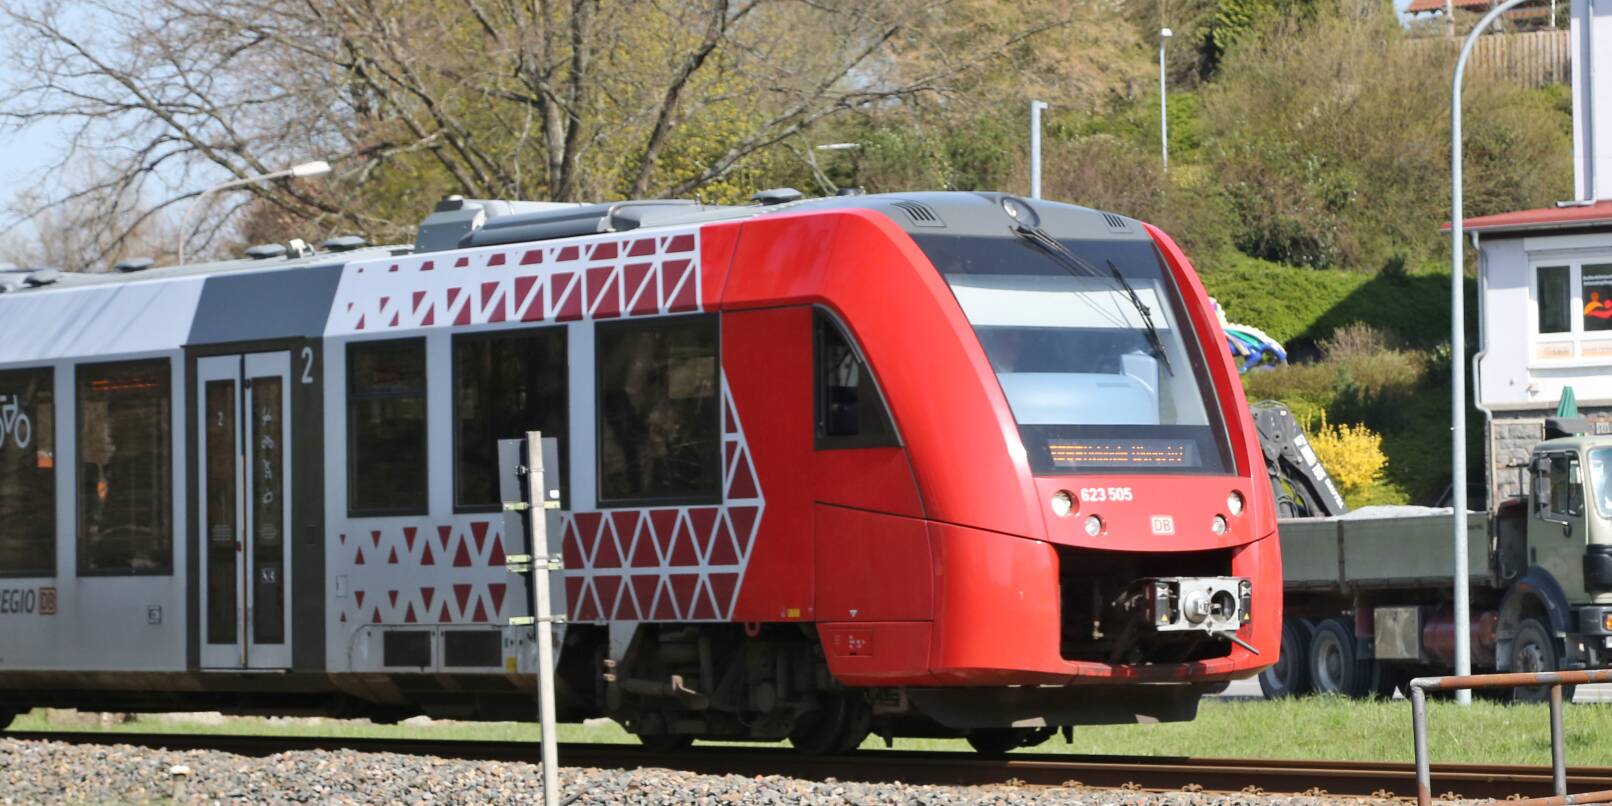 Am 1. Mai wurde das Deutschlandticket eingeführt. Für 49 Euro können Besitzer der Fahrkarte deutschlandweit den öffentlichen Nahverkehr nutzen – und zum Beispiel in Mörlenbach in die Weschnitztalbahn steigen. Wie ist das Angebot im ersten Monat angekommen?